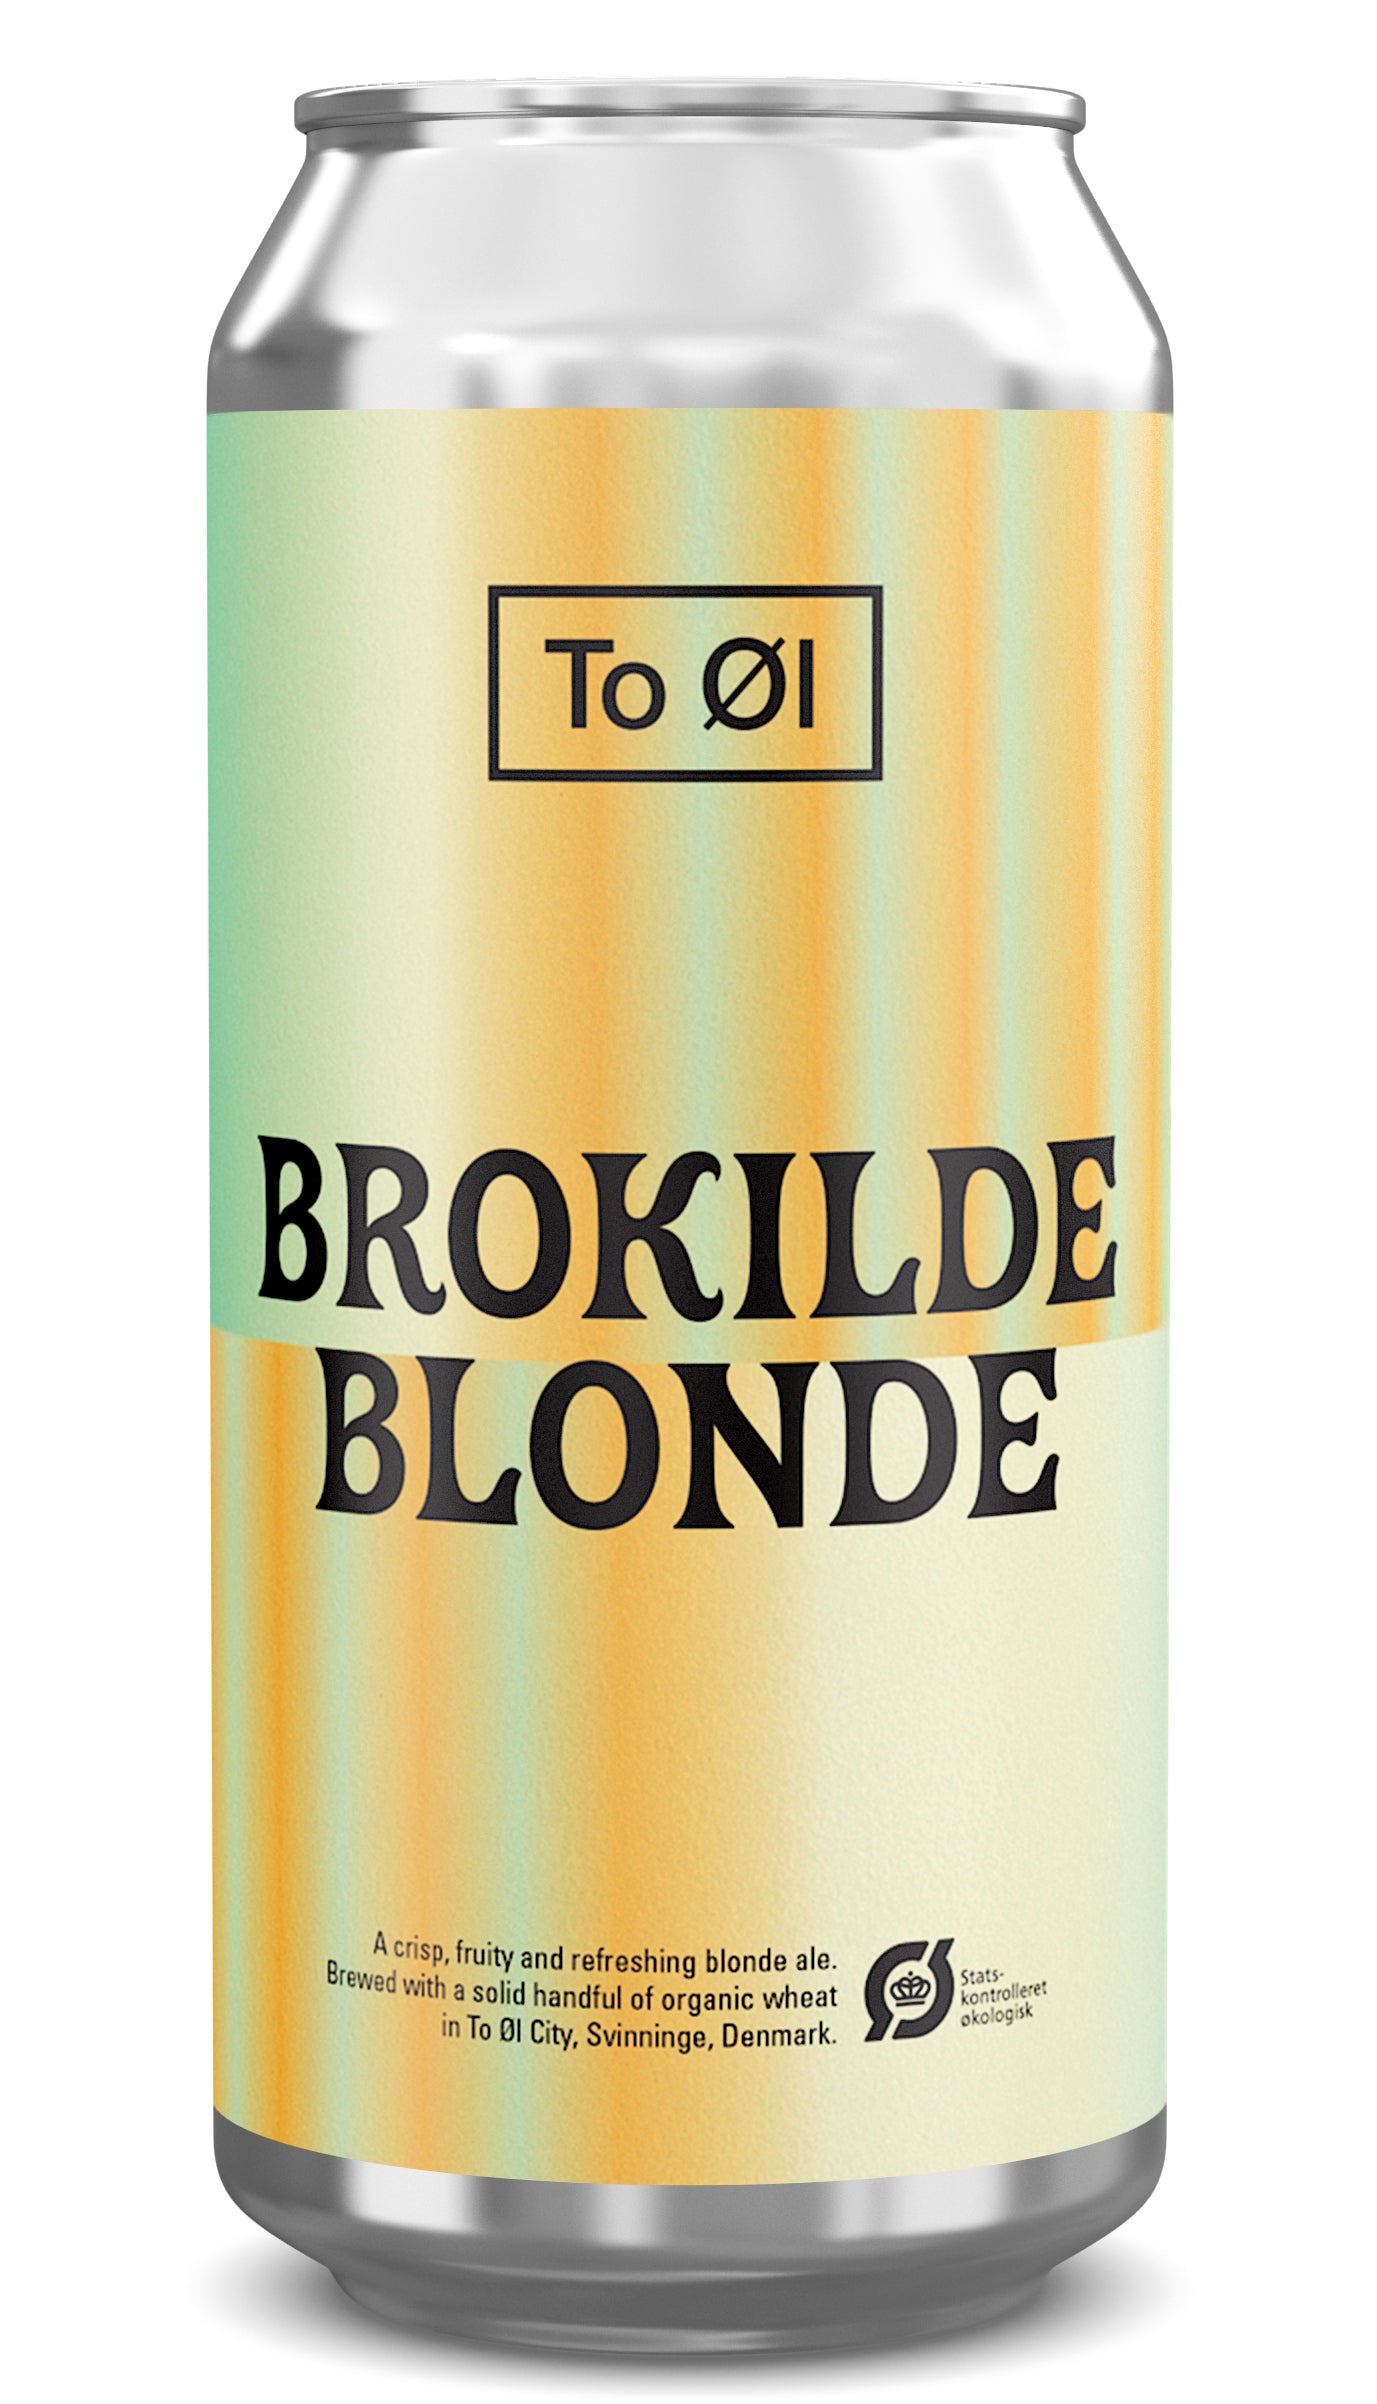 Brokilde Blonde